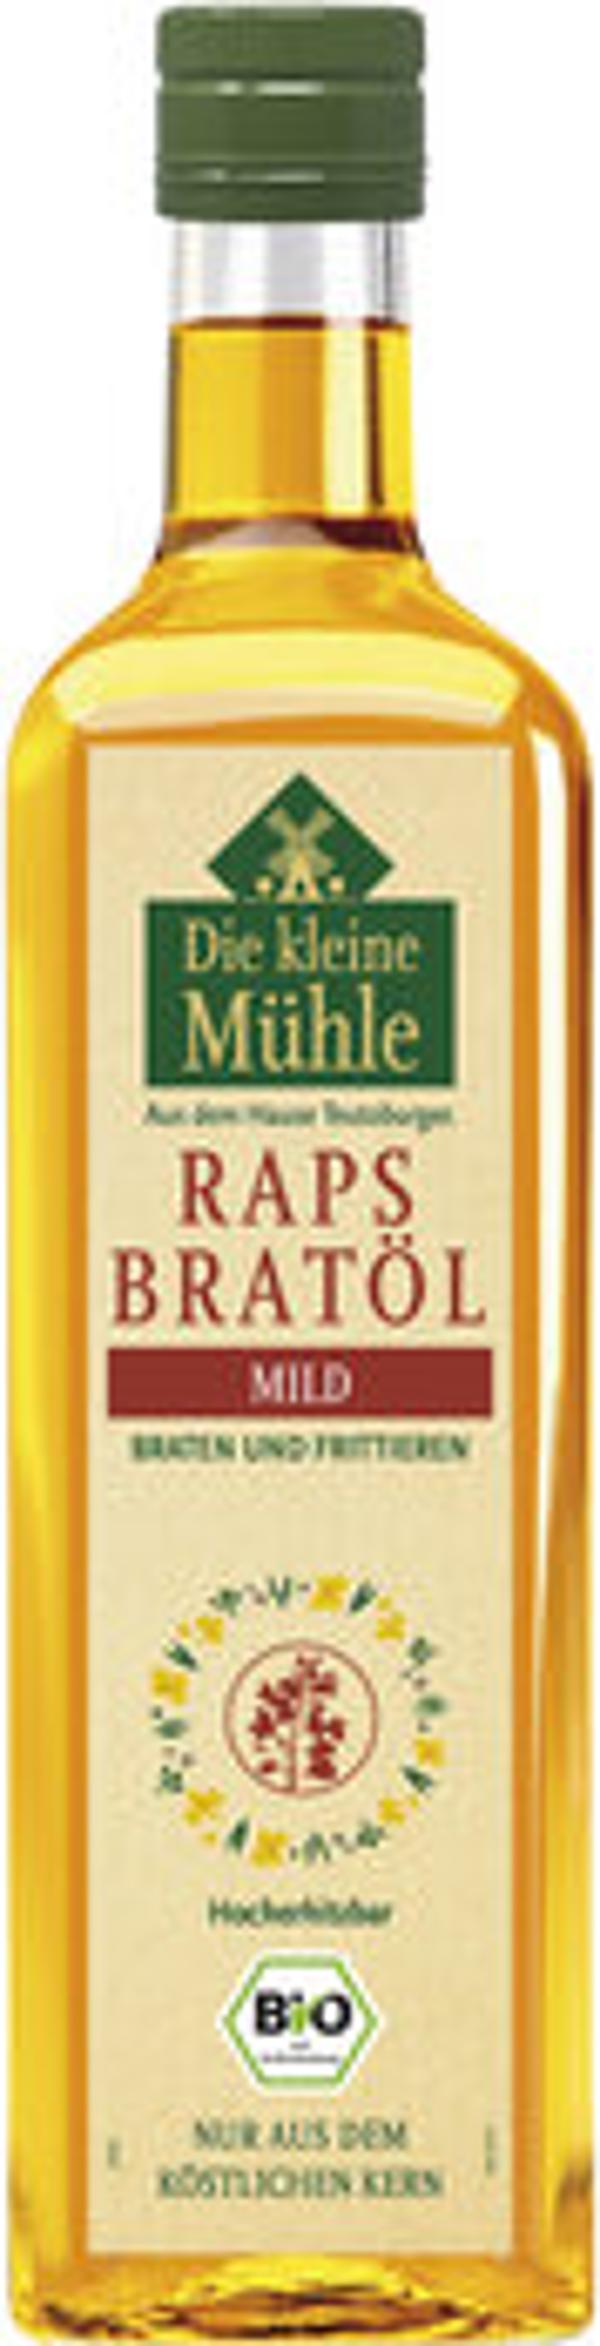 Produktfoto zu Rapskern-Bratöl 750ml